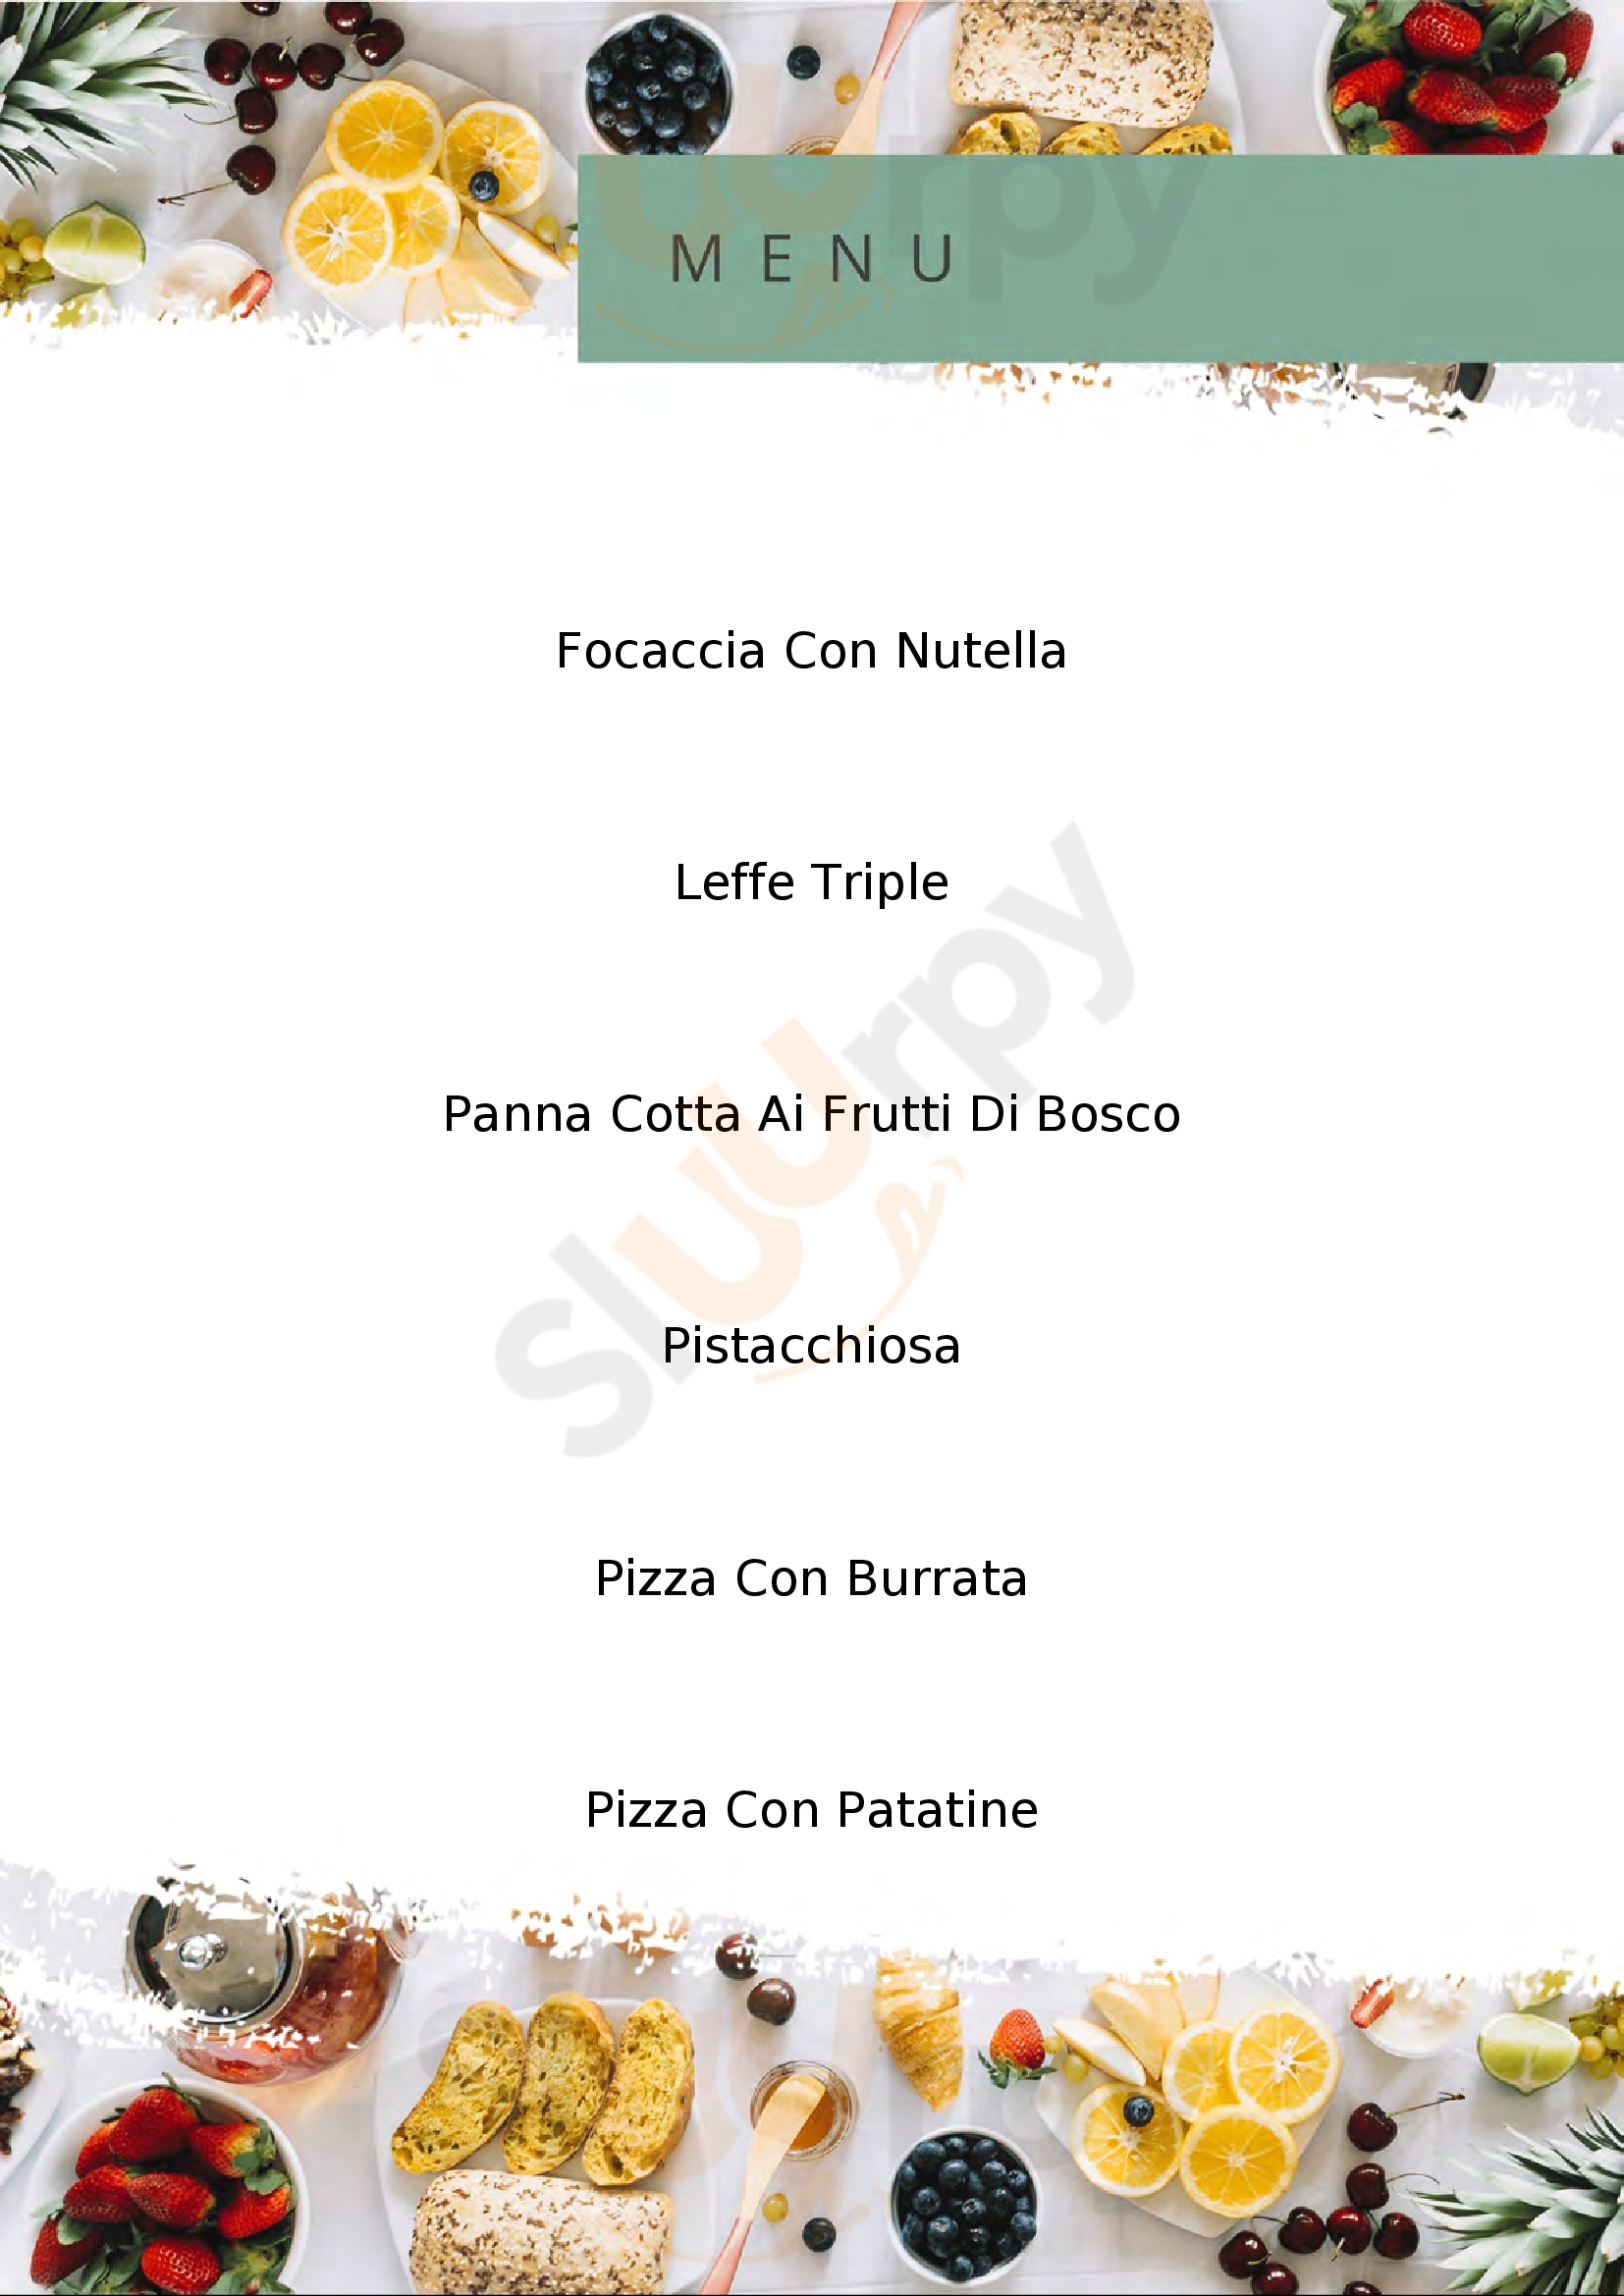 Pizzeria Del Conte Cuneo menù 1 pagina